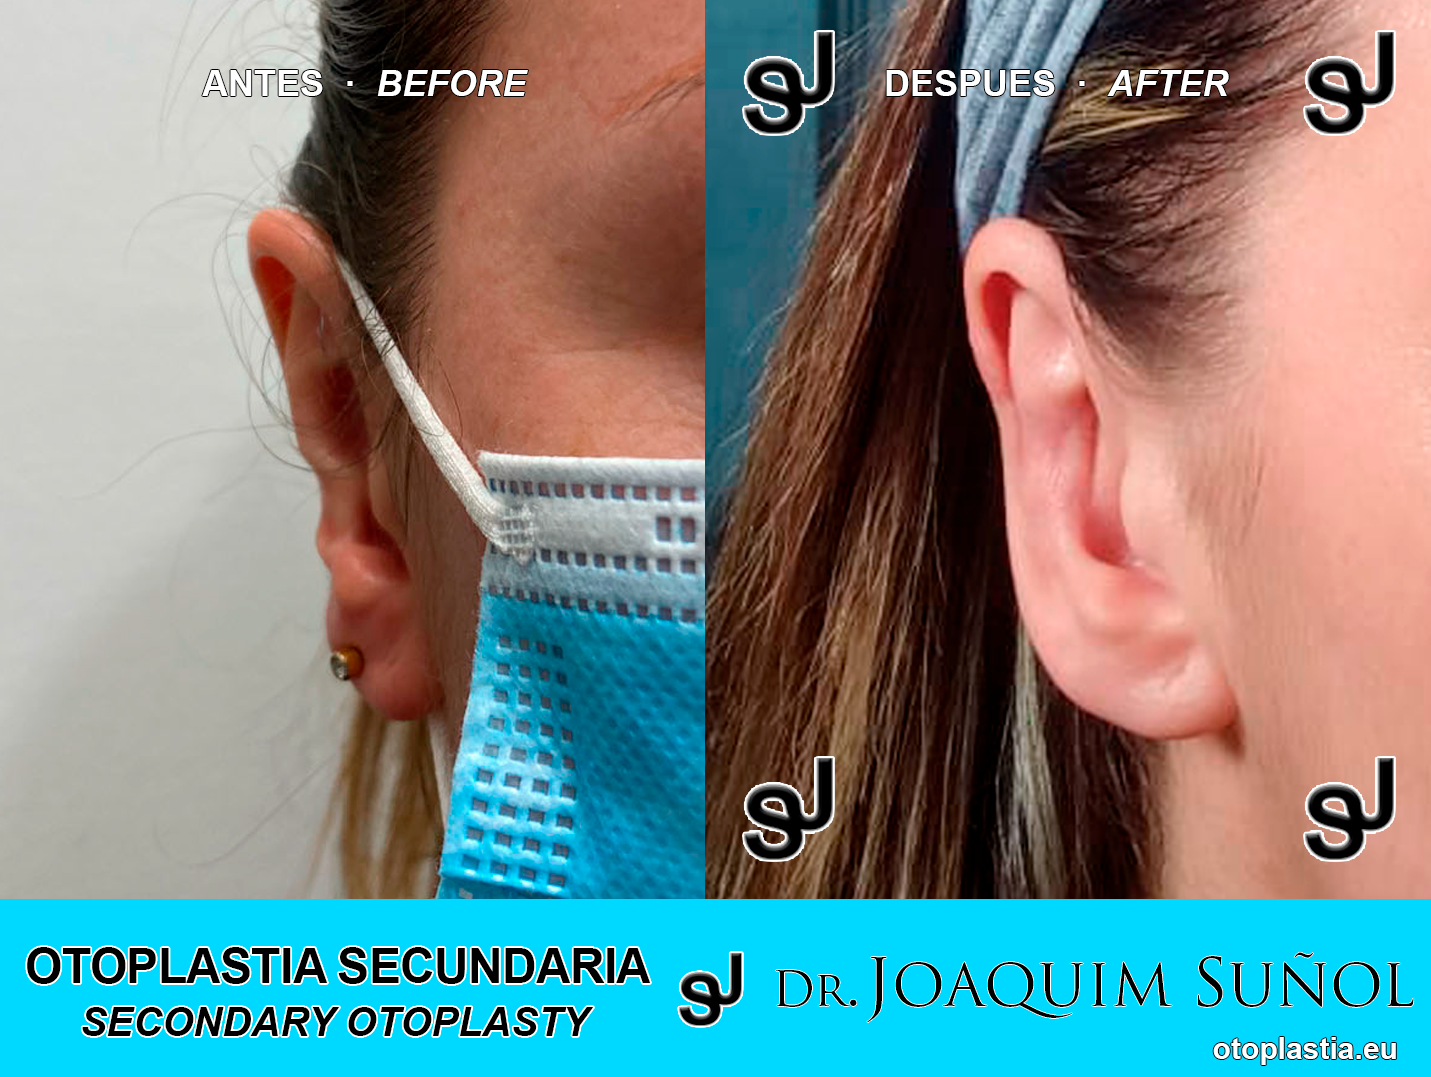 Reoperacion de orejas - otoplastia secundaria: Resultados reales Antes y Despues